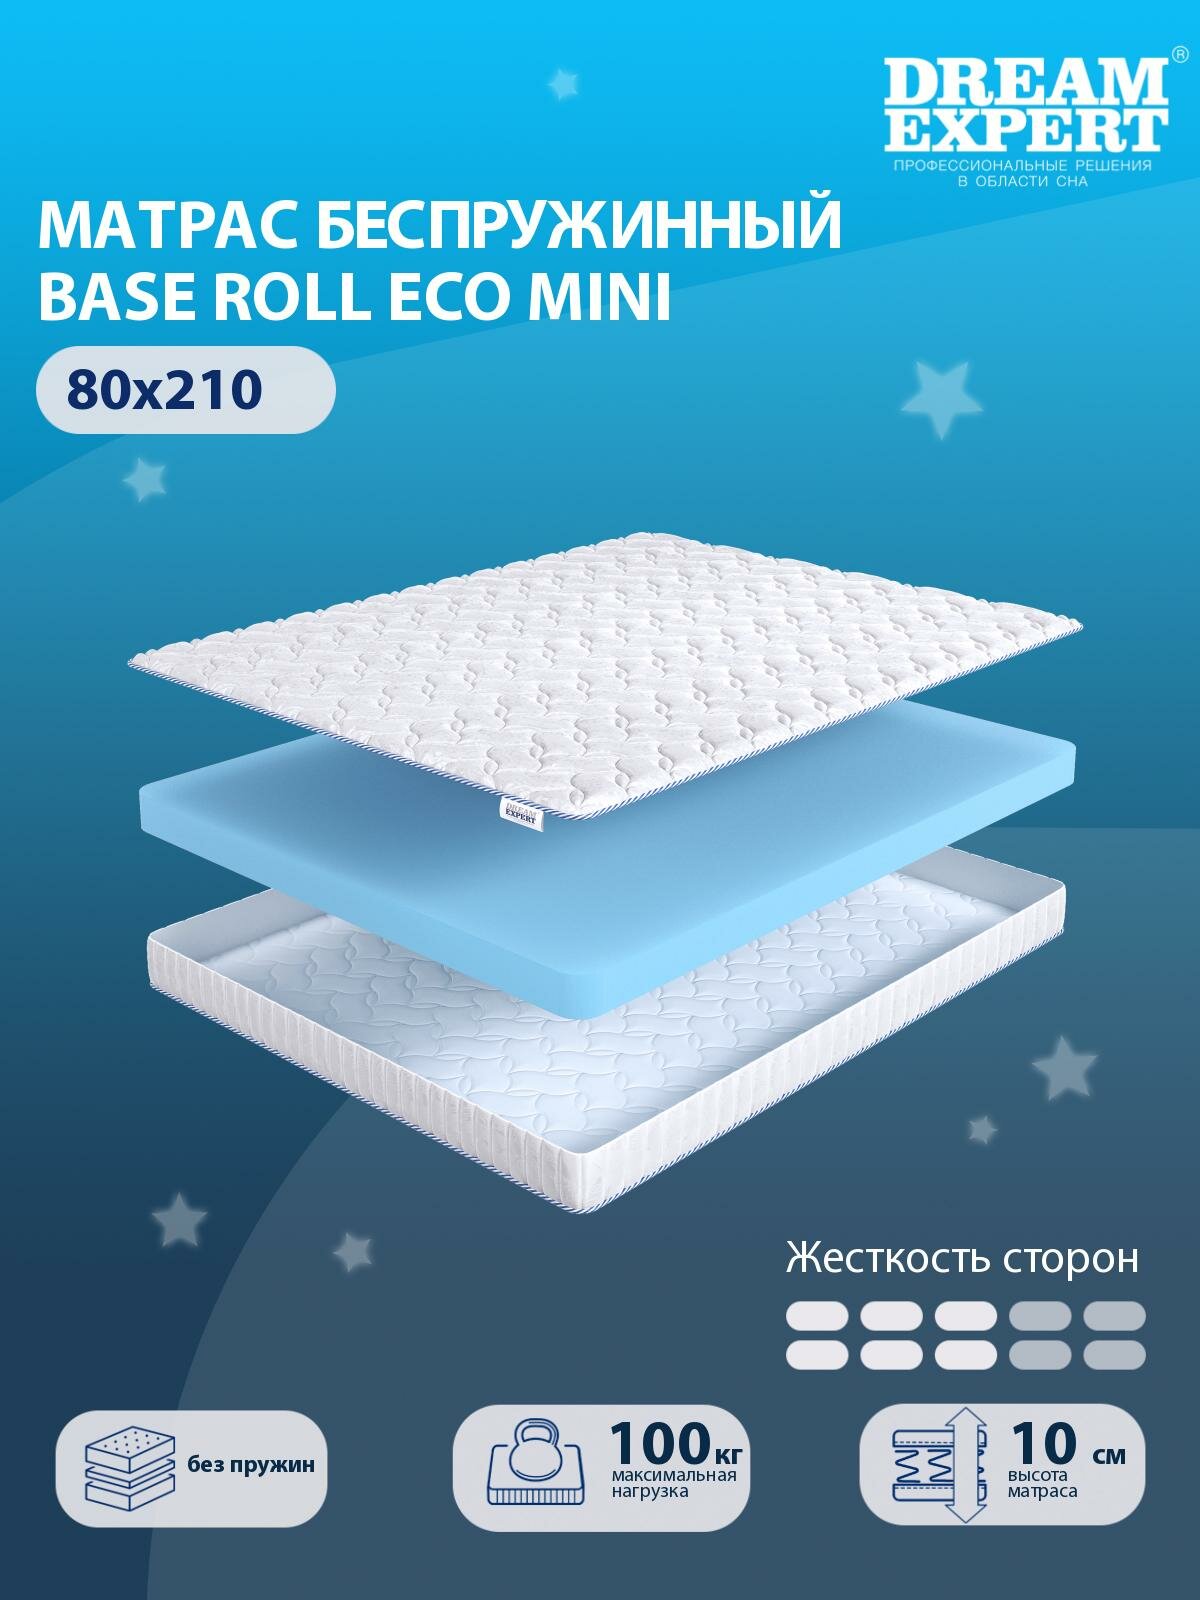 Матрас DreamExpert Base Roll Eco mini средней жесткости, односпальный, беспружинный, на кровать 80x210